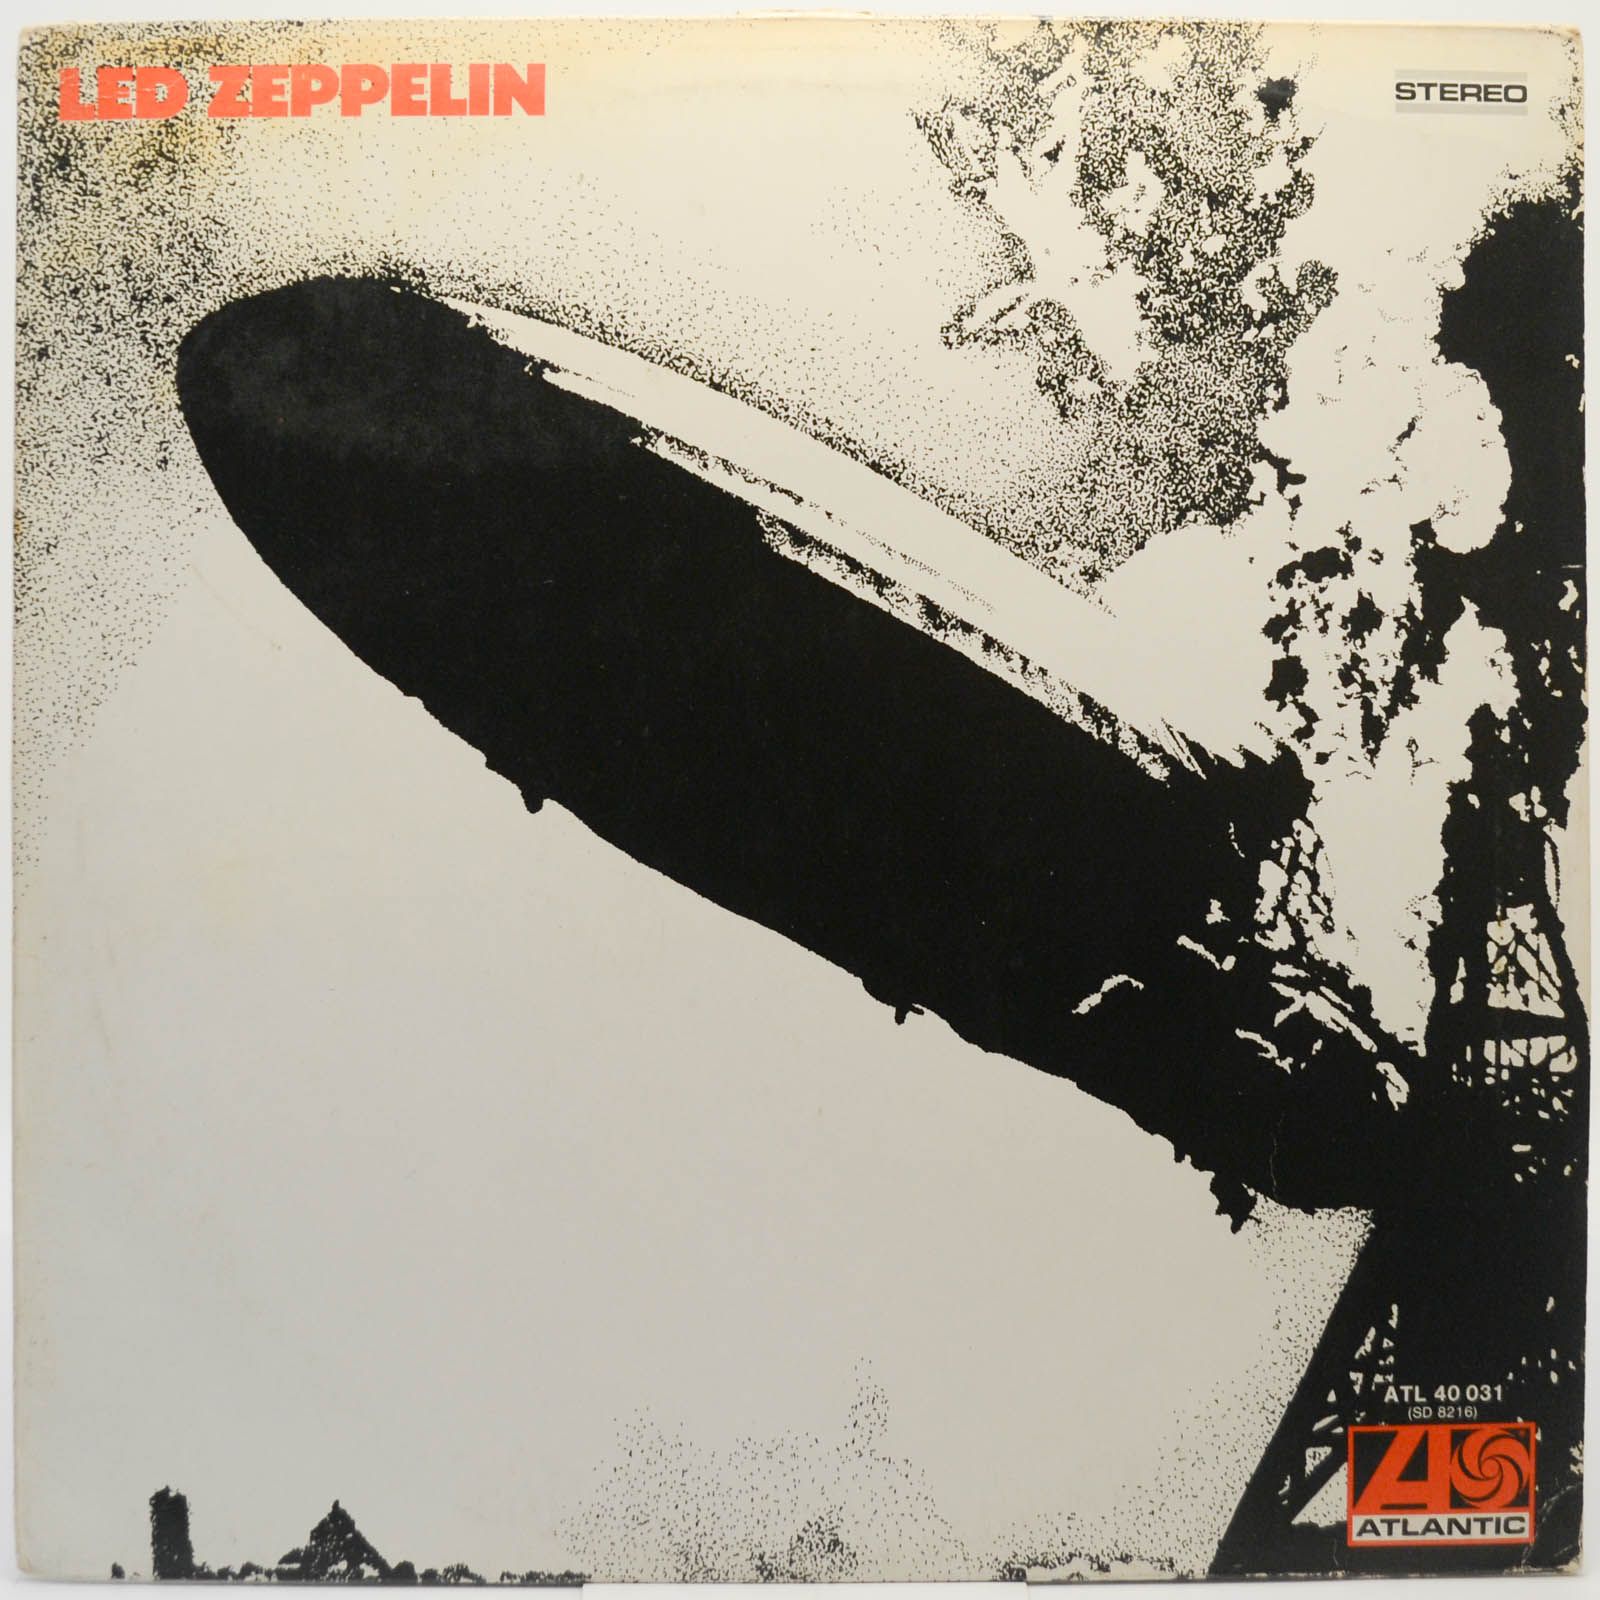 Led Zeppelin — Led Zeppelin, 1969